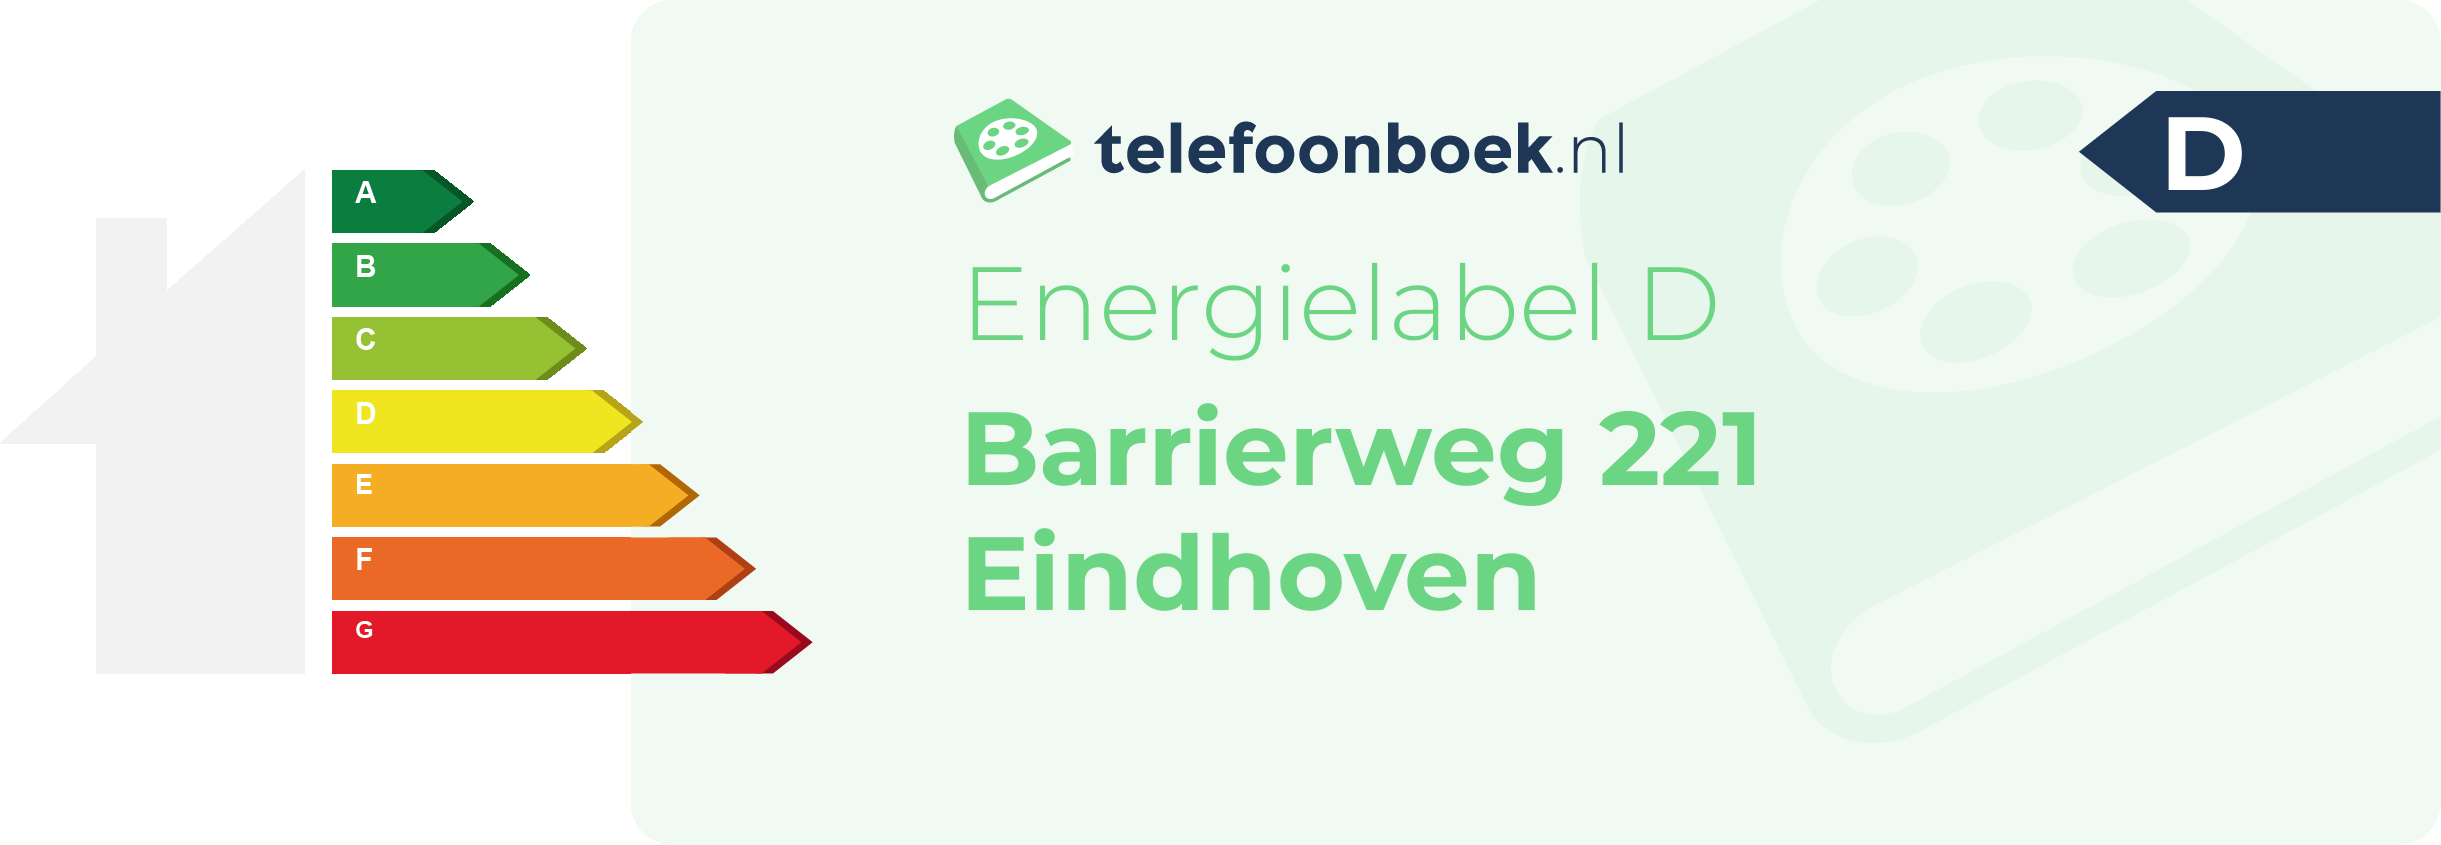 Energielabel Barrierweg 221 Eindhoven